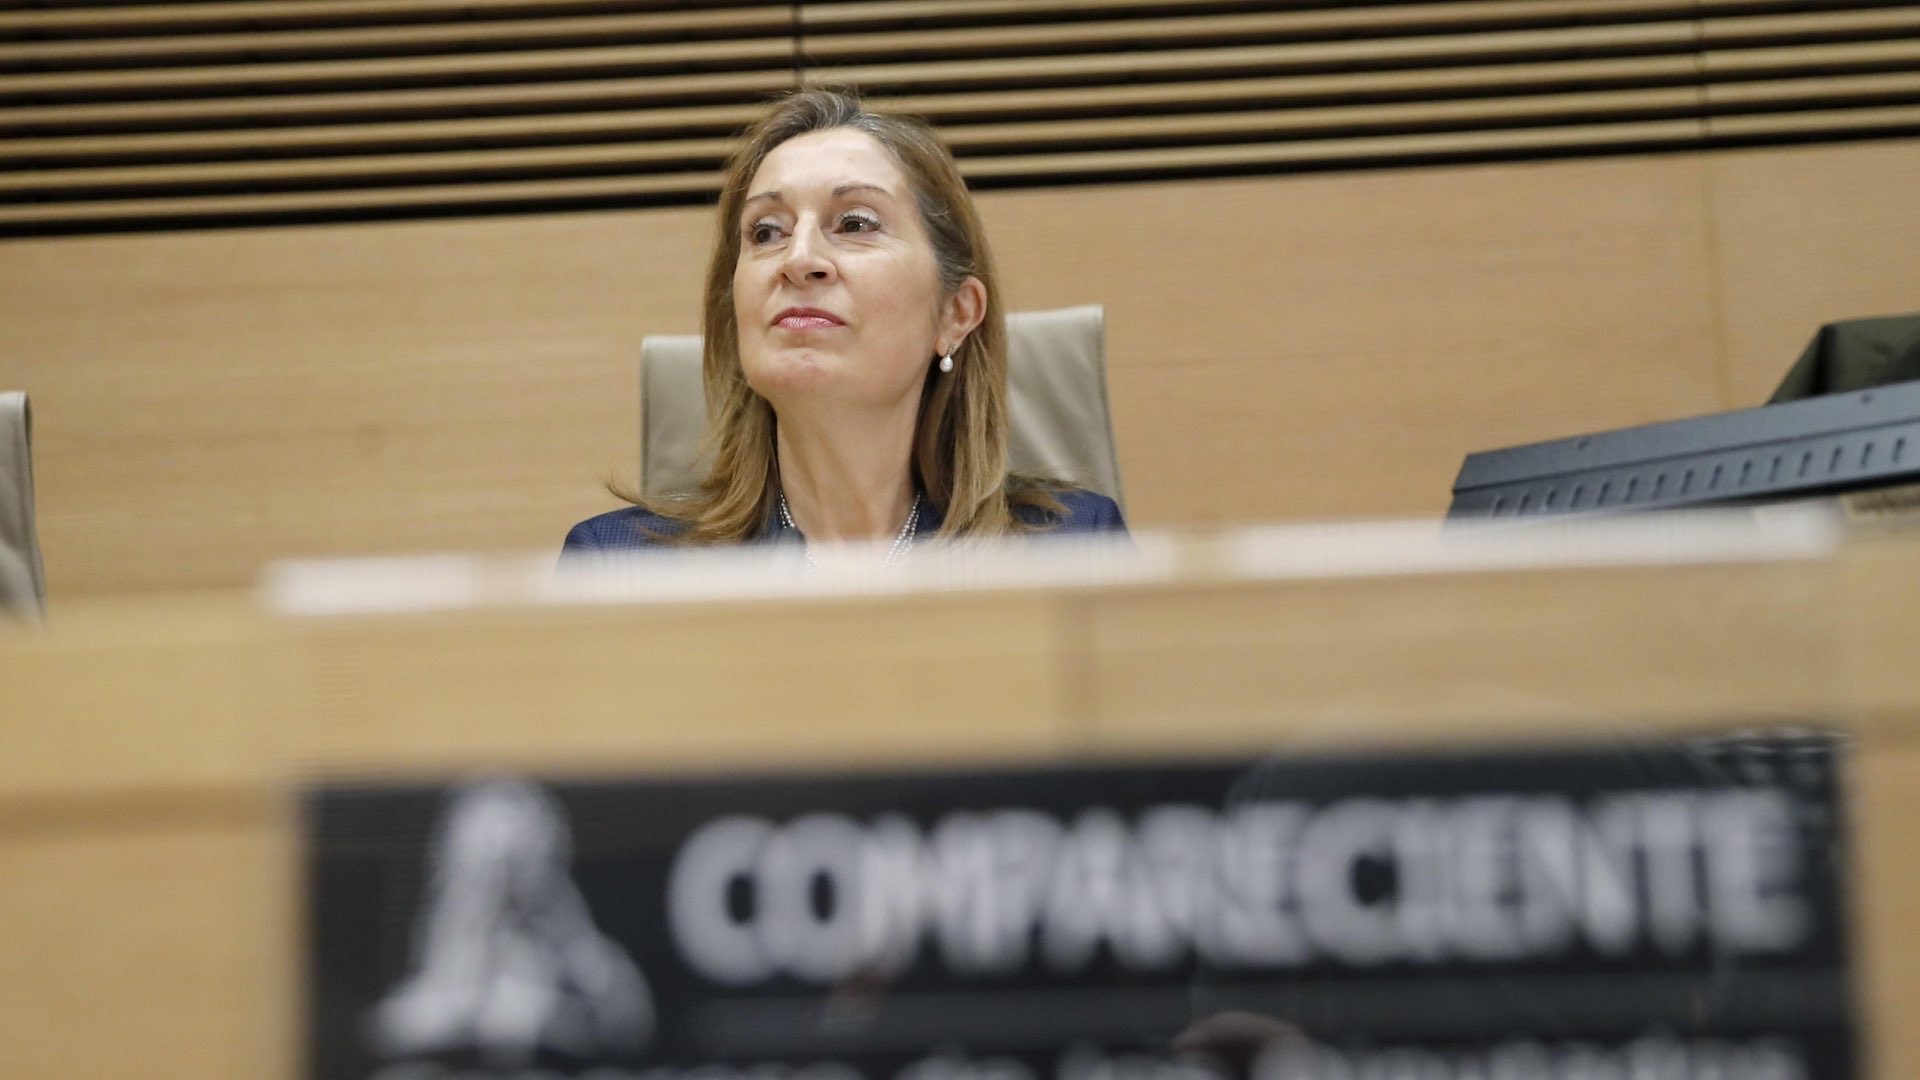 Ana Pastor (PP) anuncia un "ambicioso plan" para que los jóvenes españoles puedan independizarse